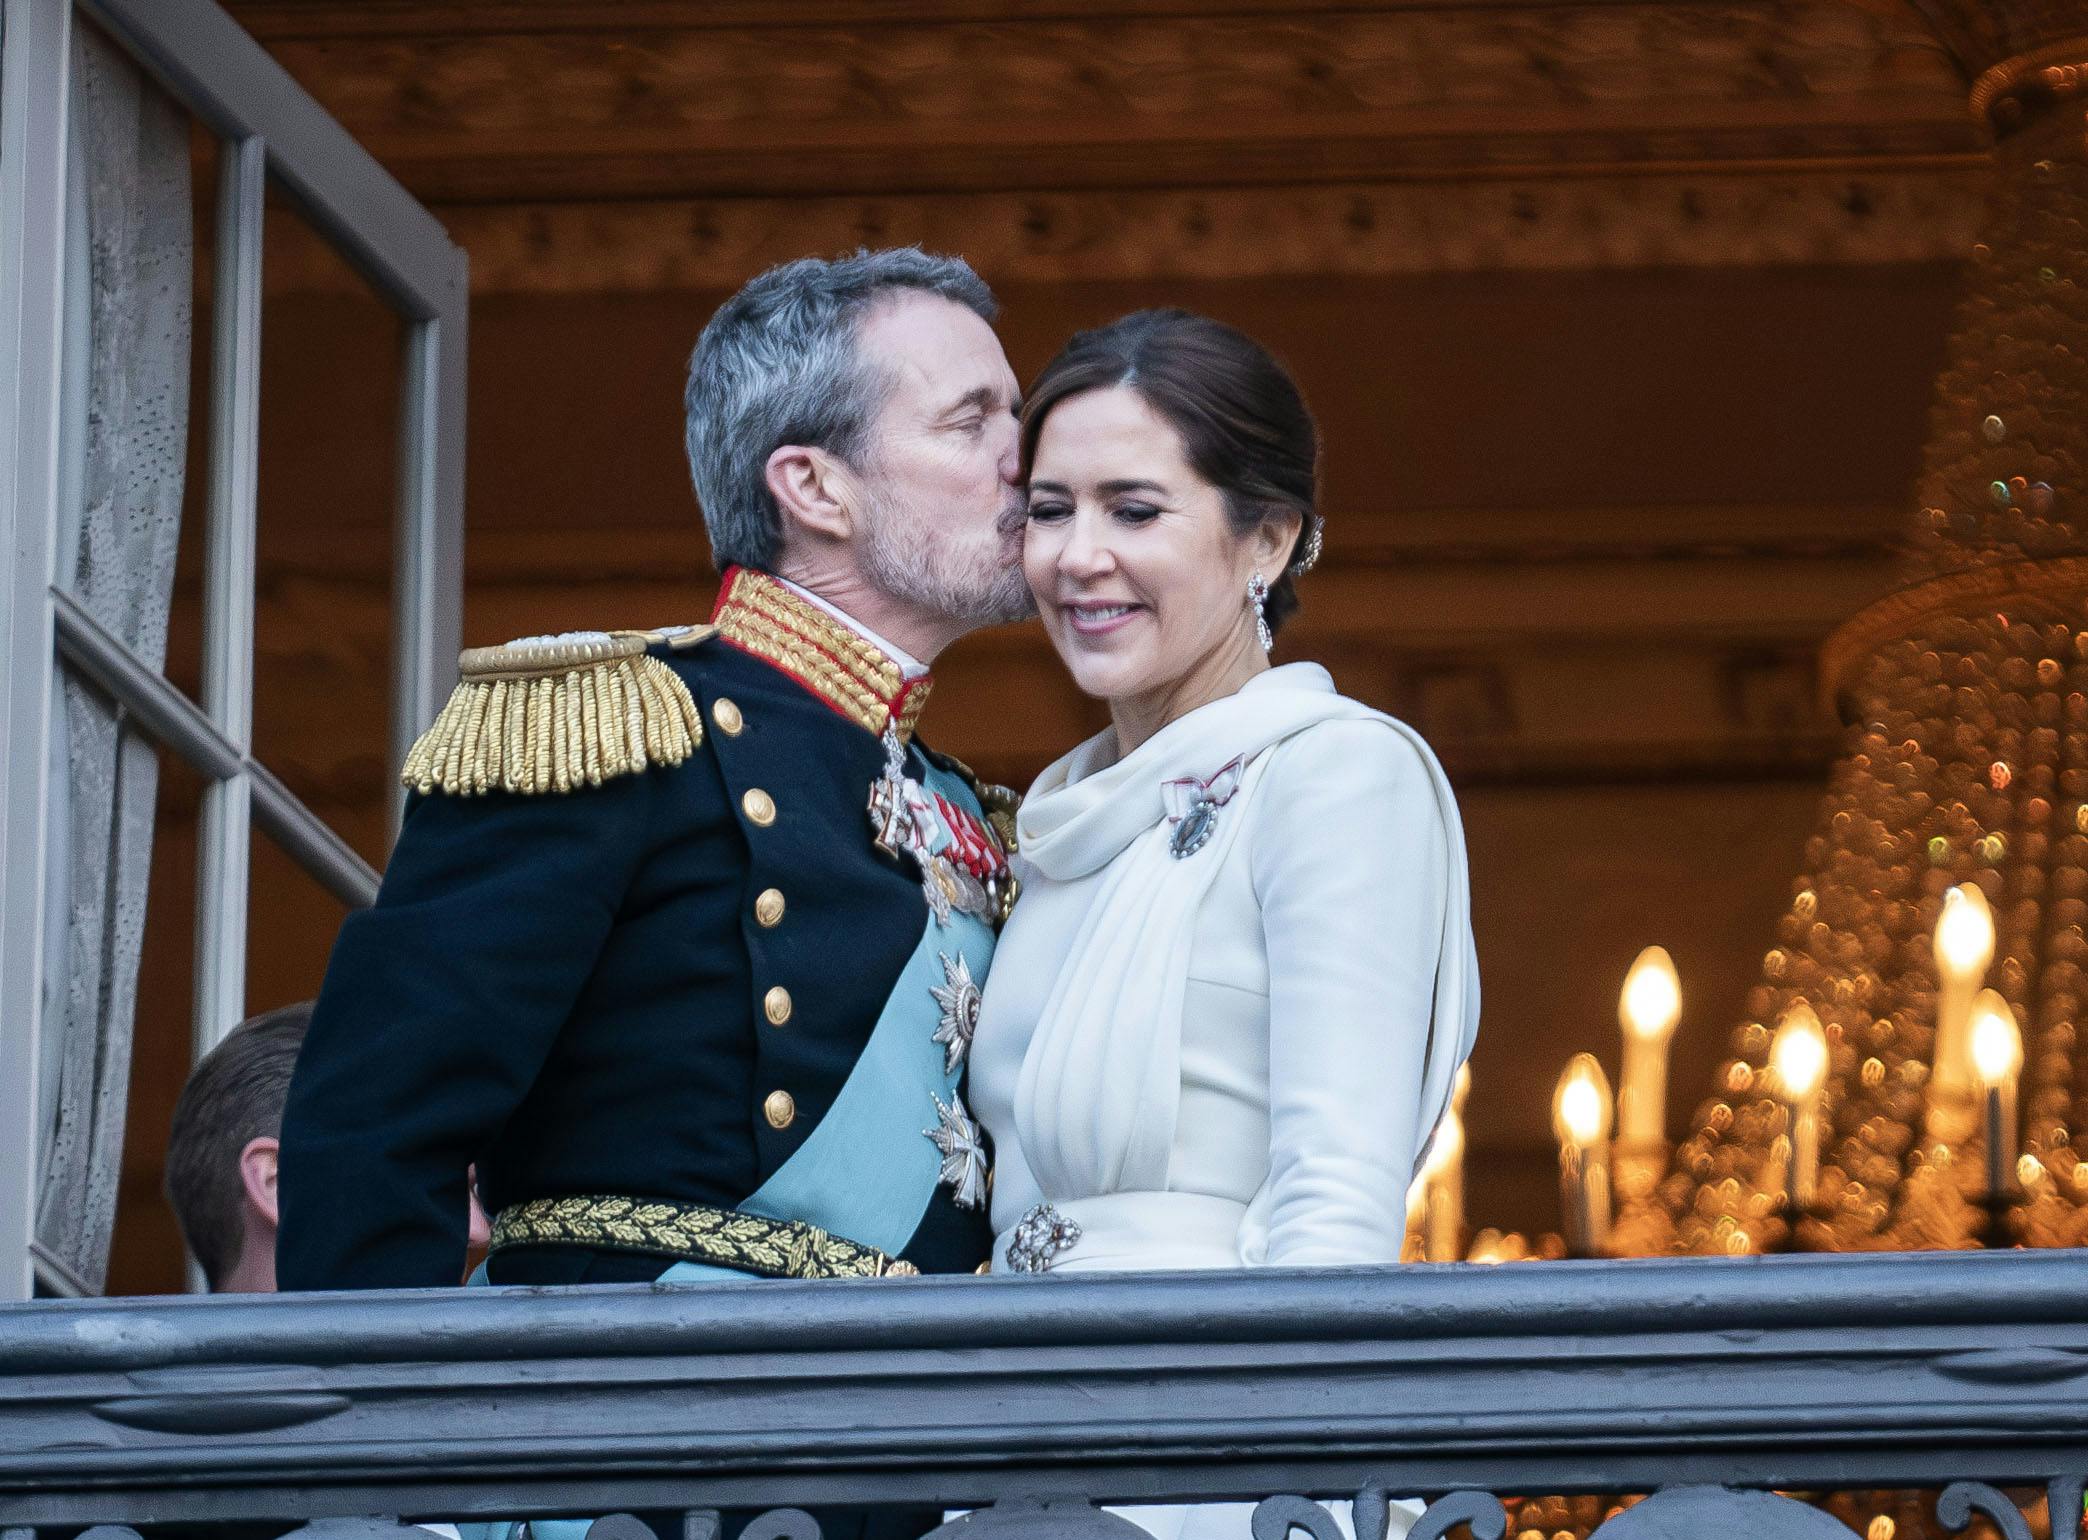 Der blev uddelt kys, da kong Frederik og dronning Mary søndag vinkede fra balkonen efter tronskiftet.